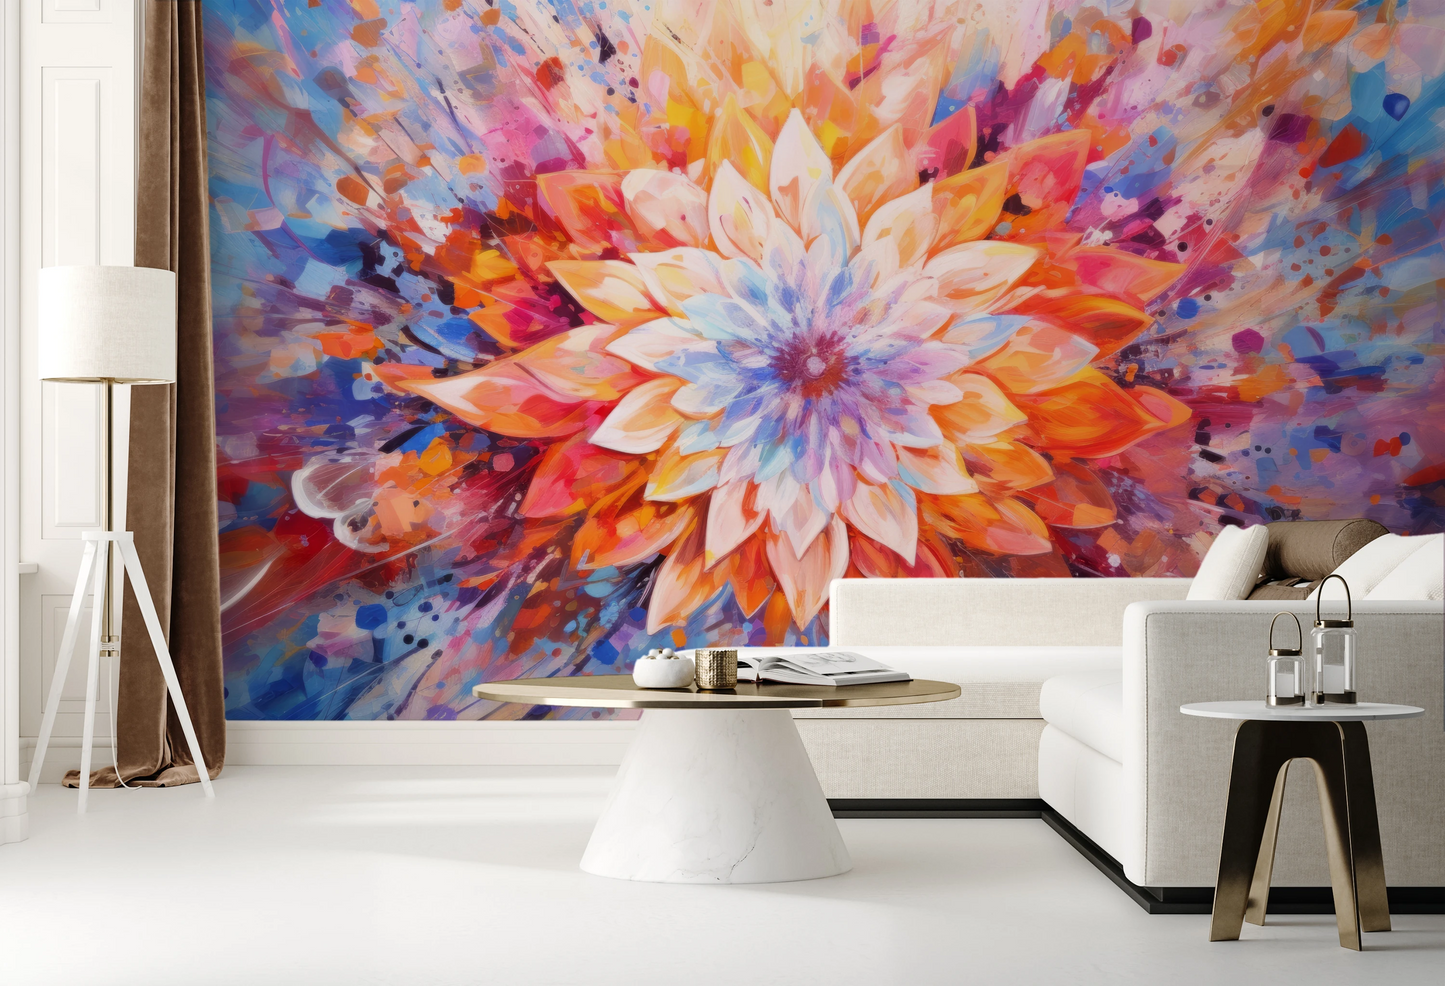 Fototapeta malowana o nazwie Radiant Bloom pokazana w aranżacji wnętrza.